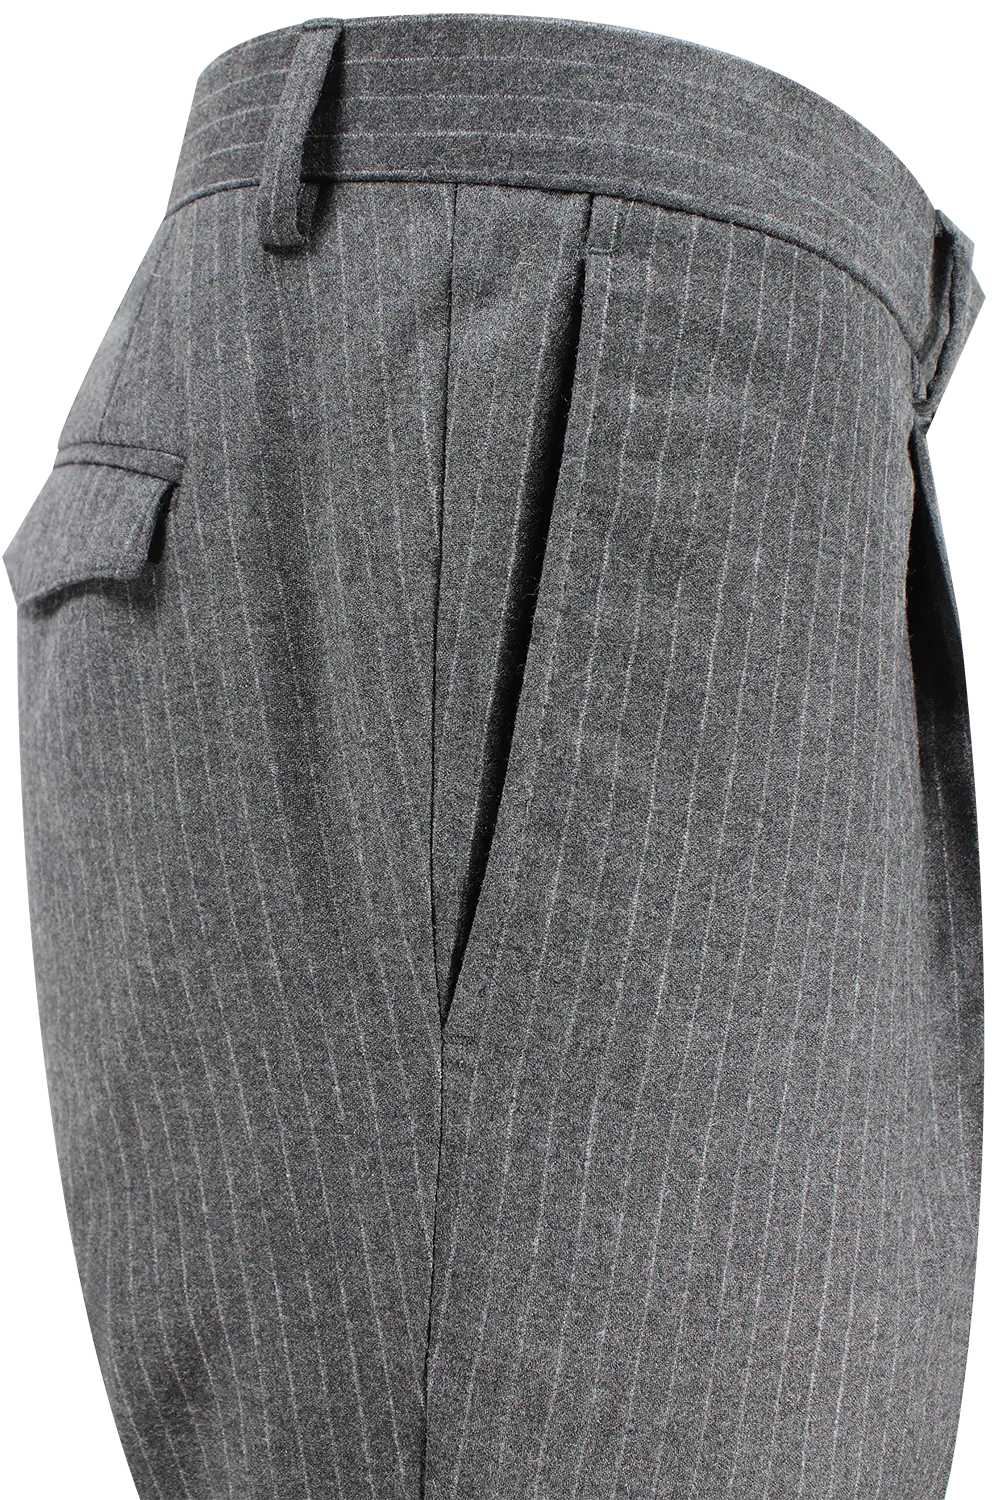 Pantalone con pince in lana antracite gessata lato